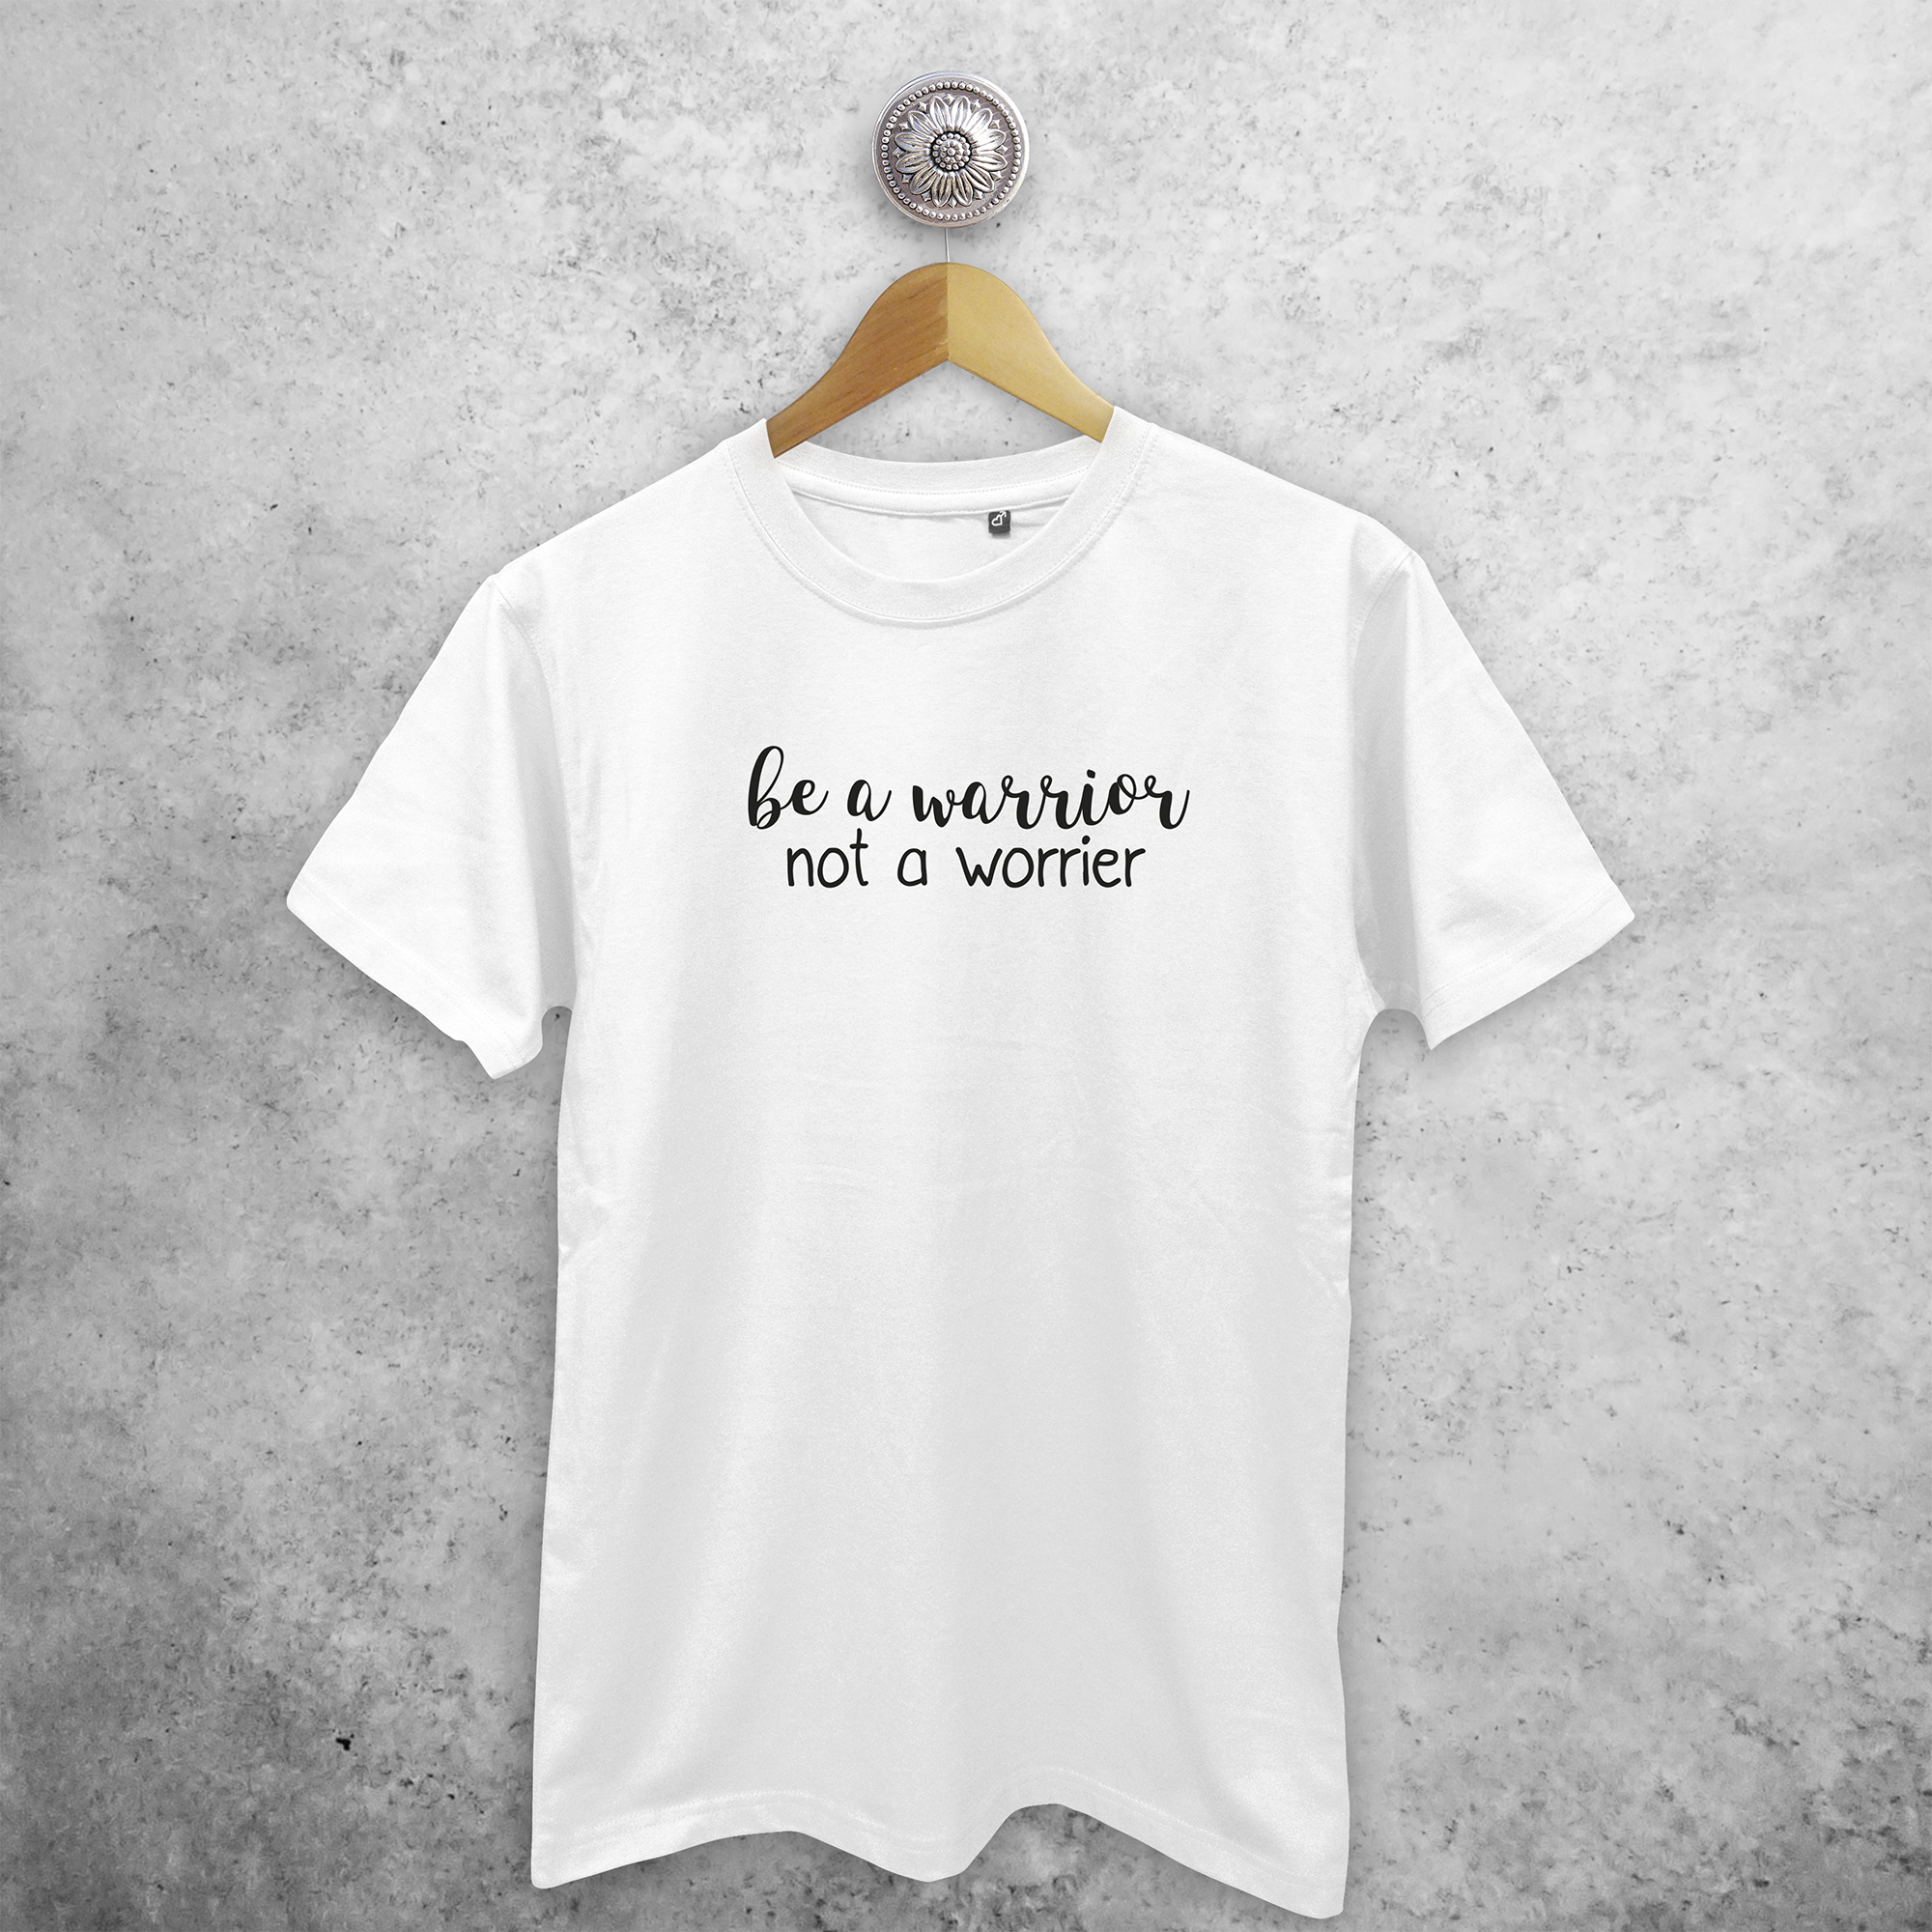 'Be a warrior, not a worrier' adult shirt